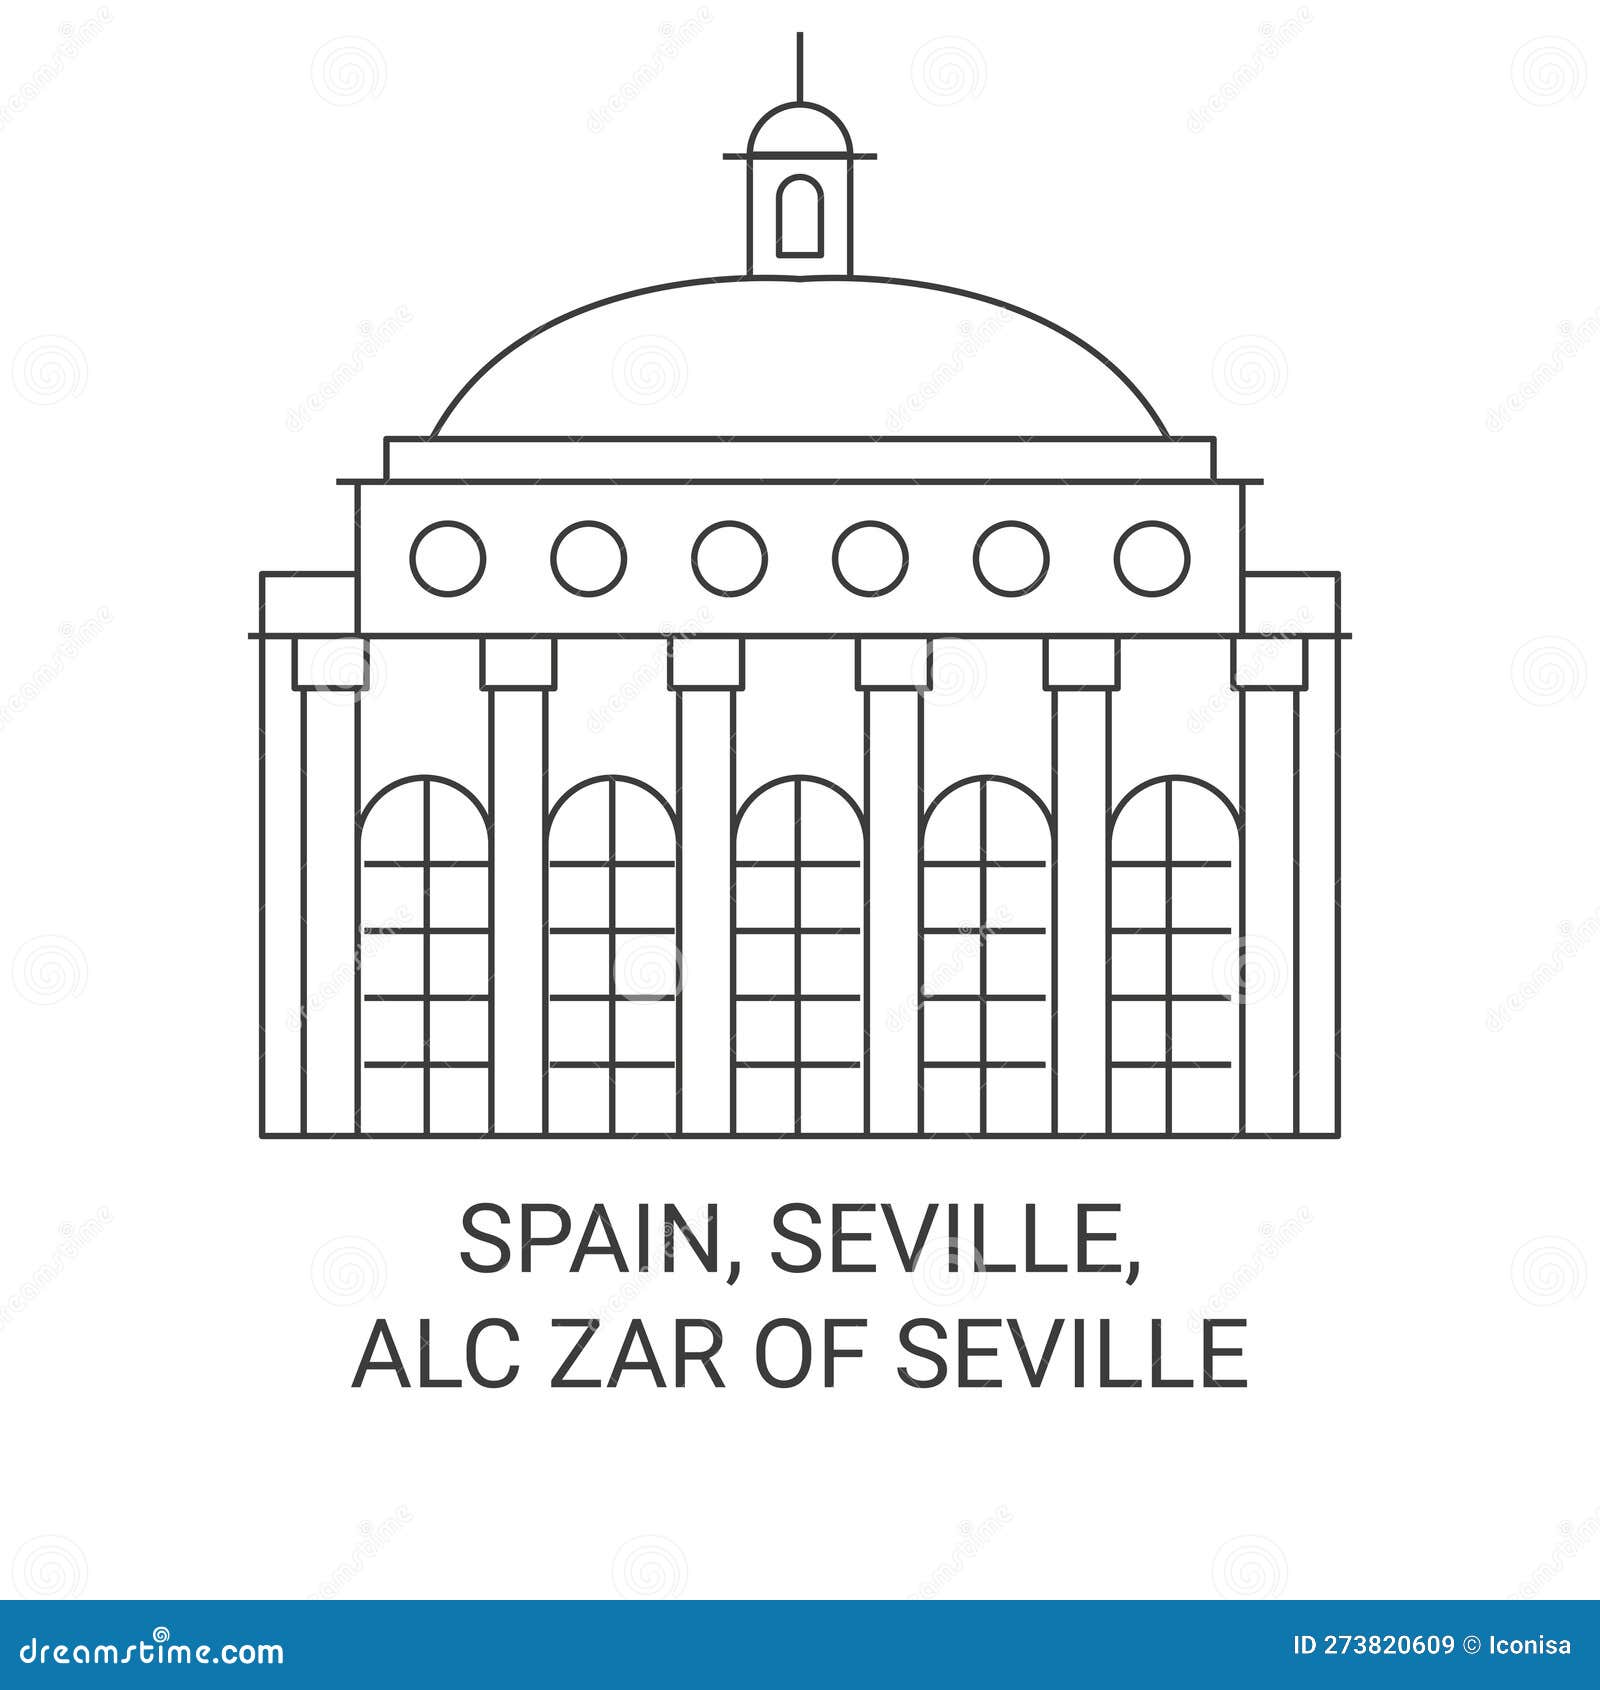 spain, seville, alczar of seville travel landmark  